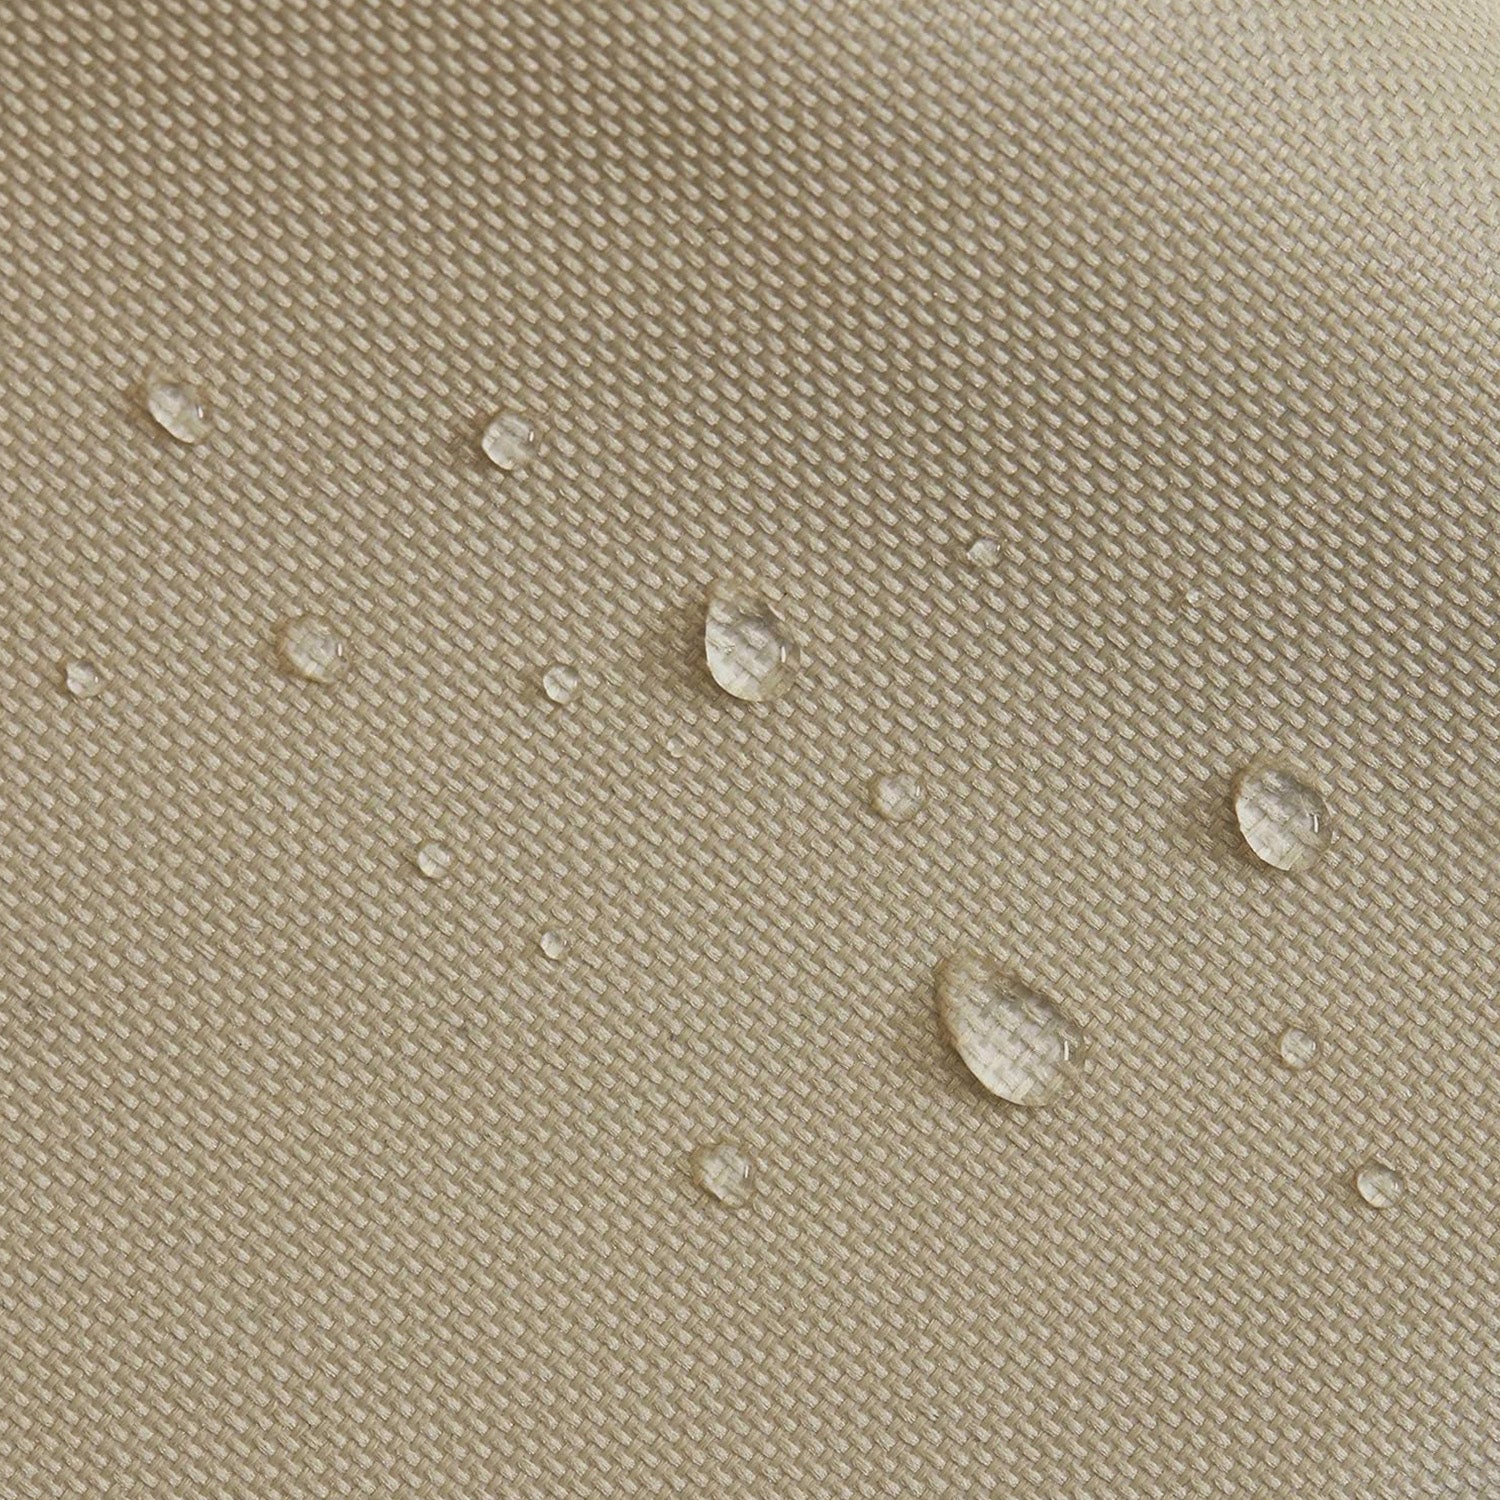 Abdeckung Schutzhülle für Sonnenschirm - 195 x 25/35 cm - Beige